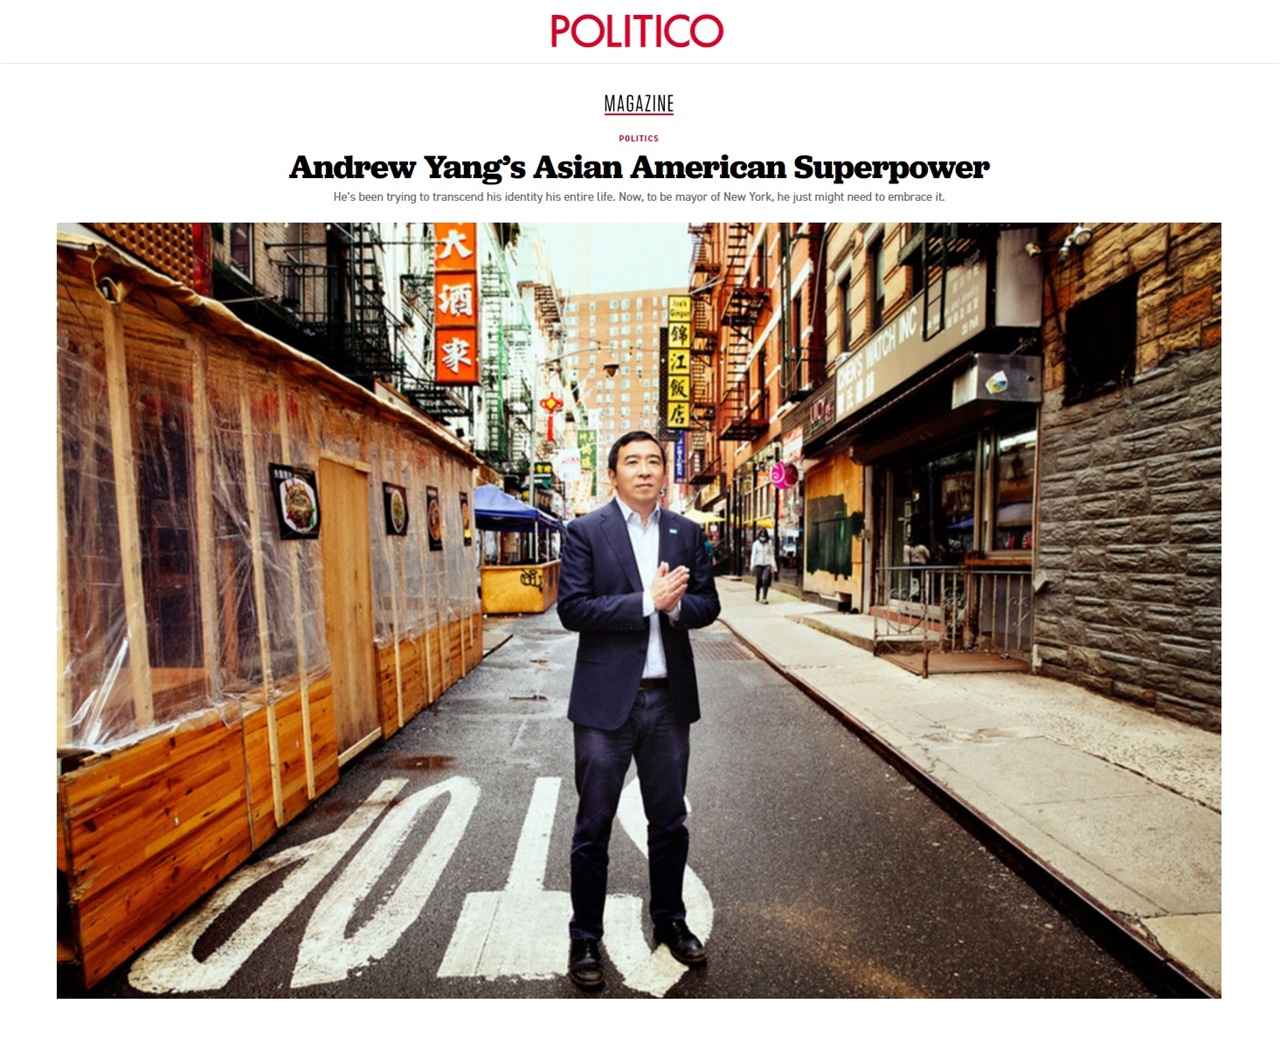 미국 뉴욕시장 선거에서 아시안계 후보인 앤드루 양의 돌풍을 보도하는 <폴리티코> 갈무리. '앤드루 양의 초능력(superpower)'이라고 제목을 뽑았다. 